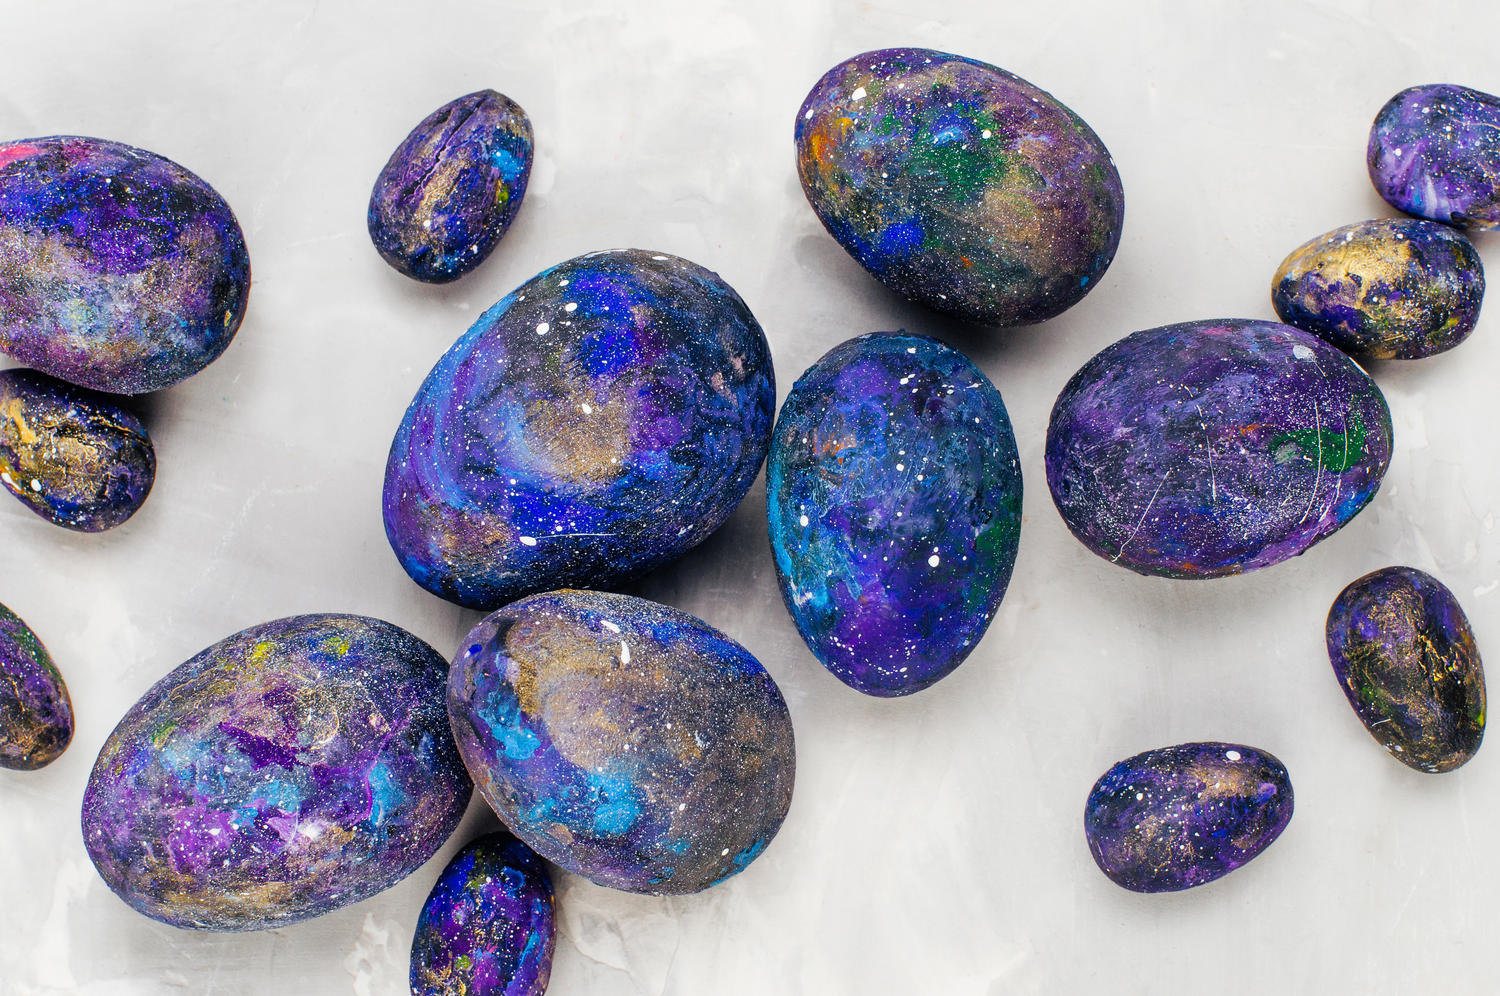 Steine, die mit einem Galaxie-Muster bemalt sind